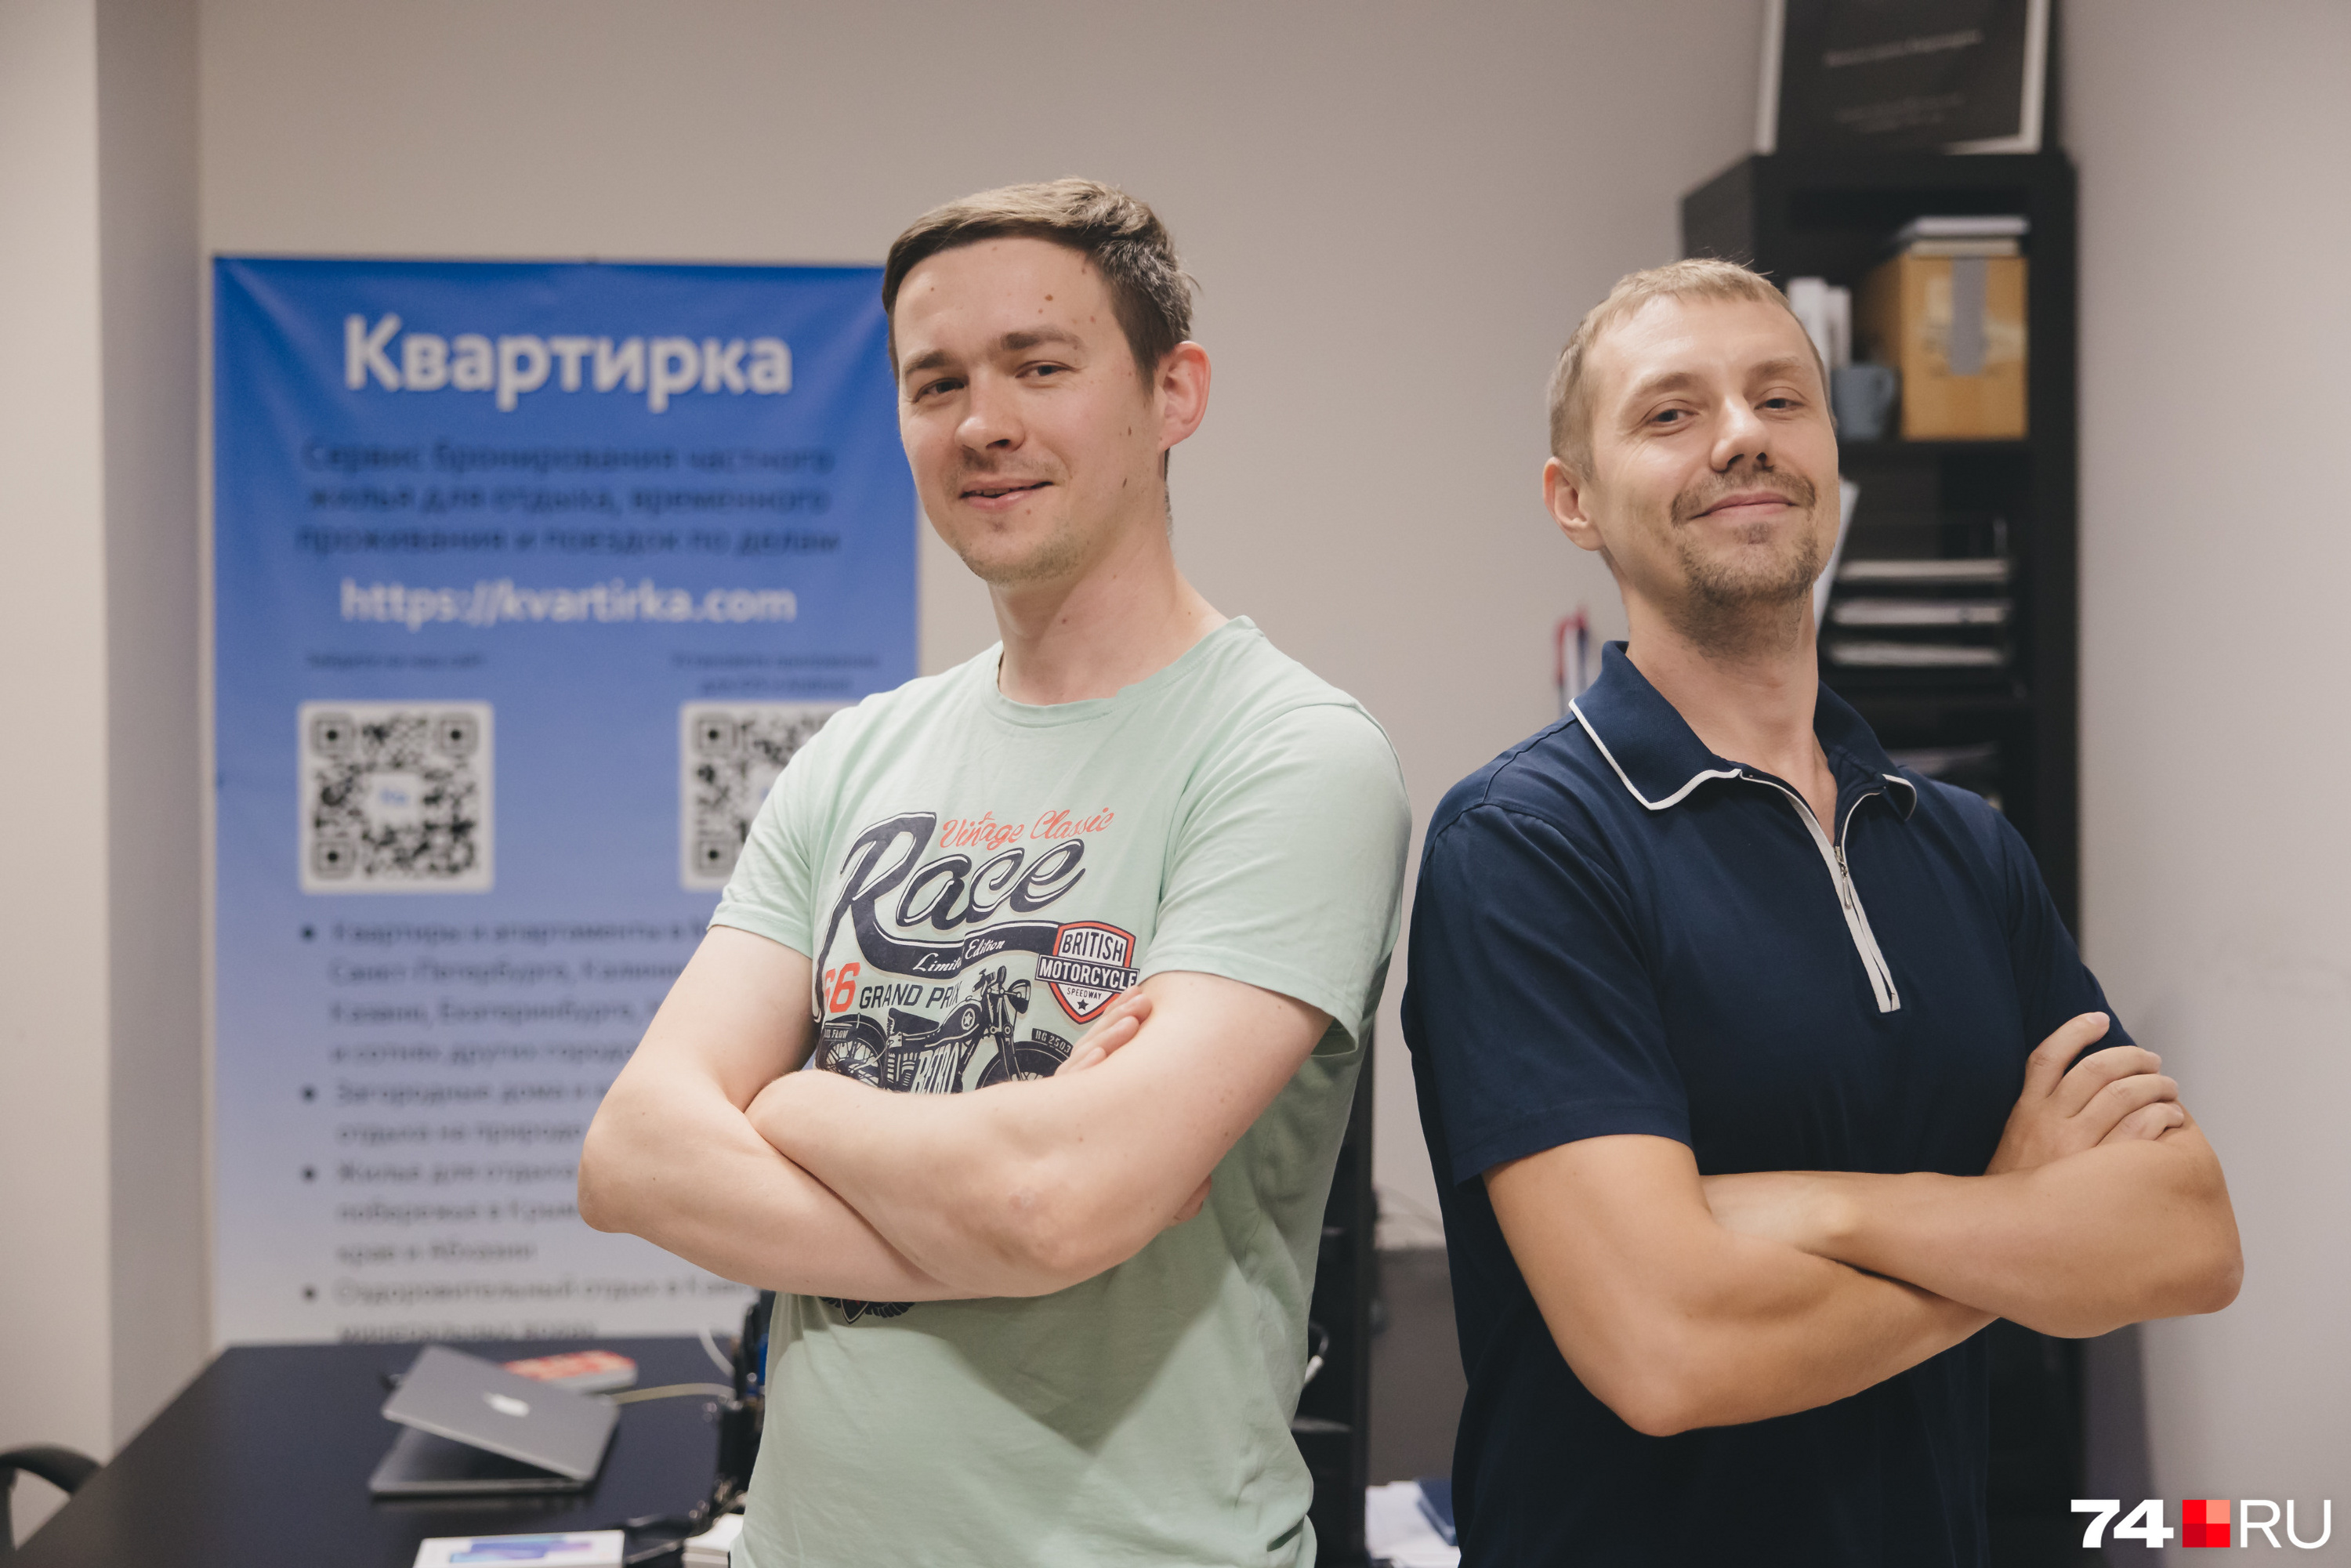 Челябинцы Евгений Ядрихинский (слева) и Сергей Ведерников начали первые бизнес-проекты, когда были студентами